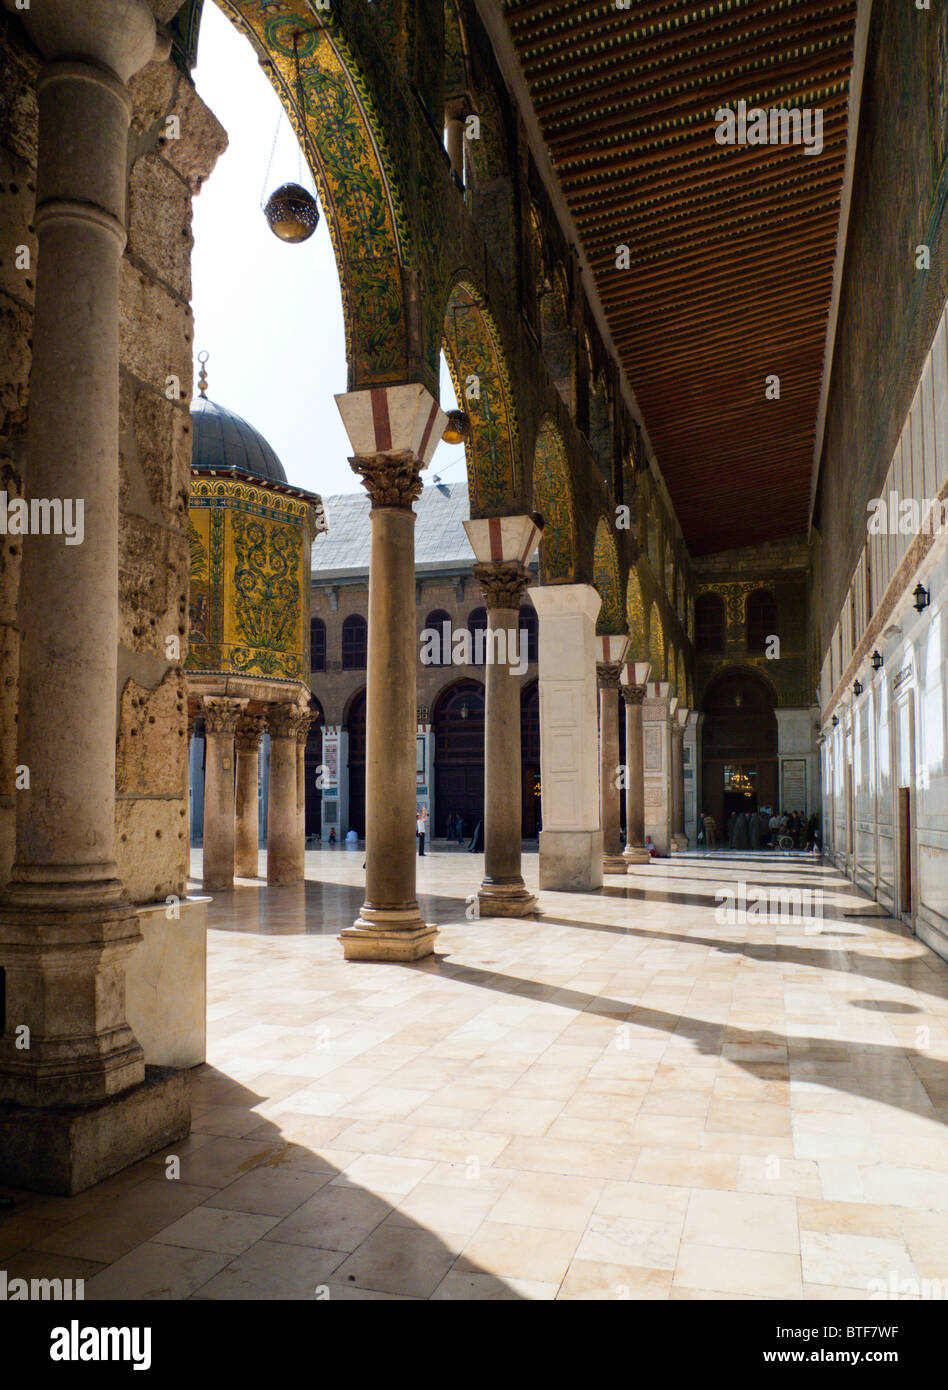 La moschea di Ummayad Completata nel 715 d.c. conosciuta anche come la Grande Moschea di Damasco, a Damasco in Siria il Medio Oriente Foto Stock